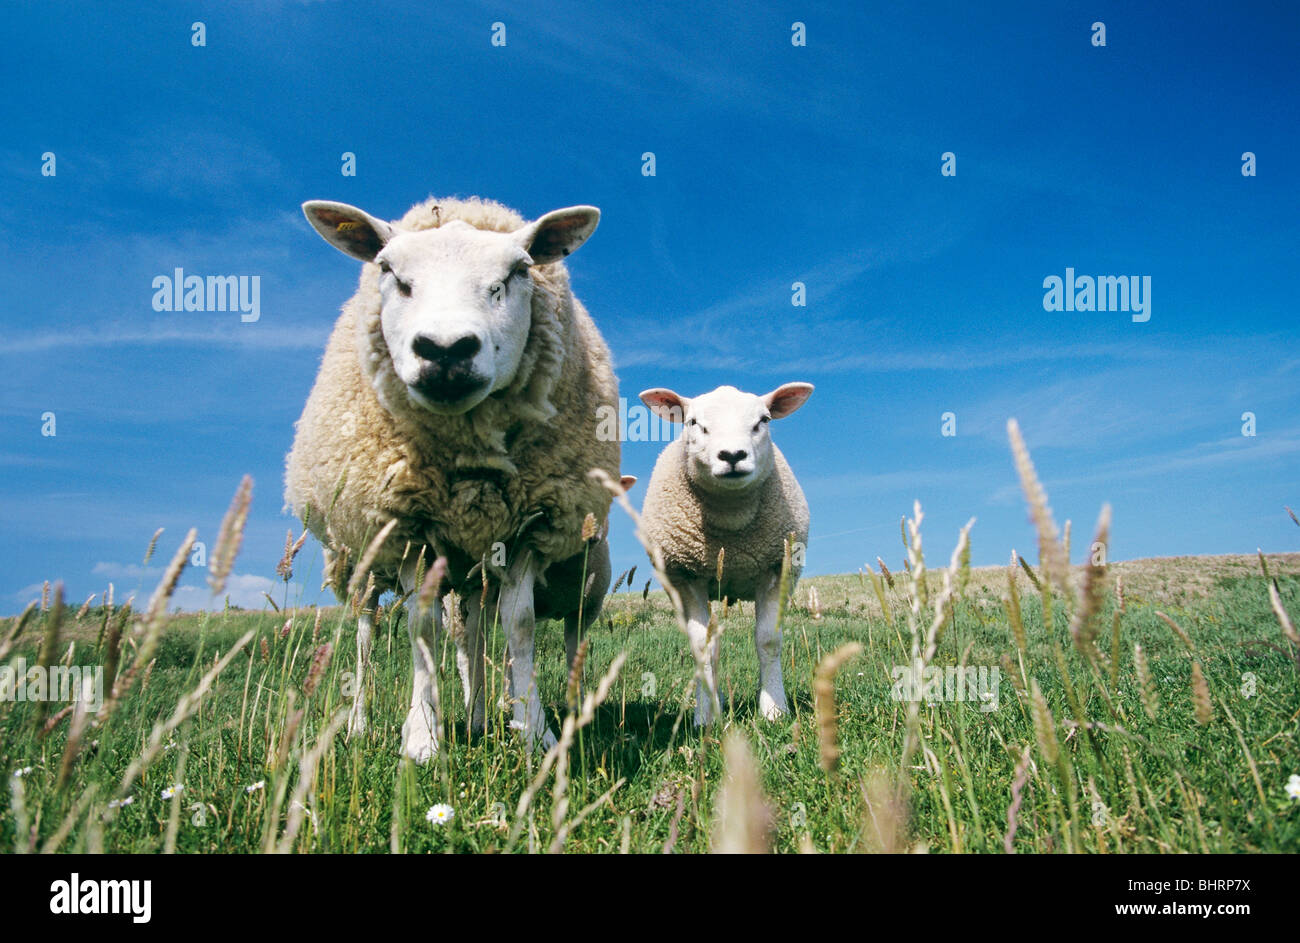 Texel sheep. Ewe with lamb standing on meadow Stock Photo